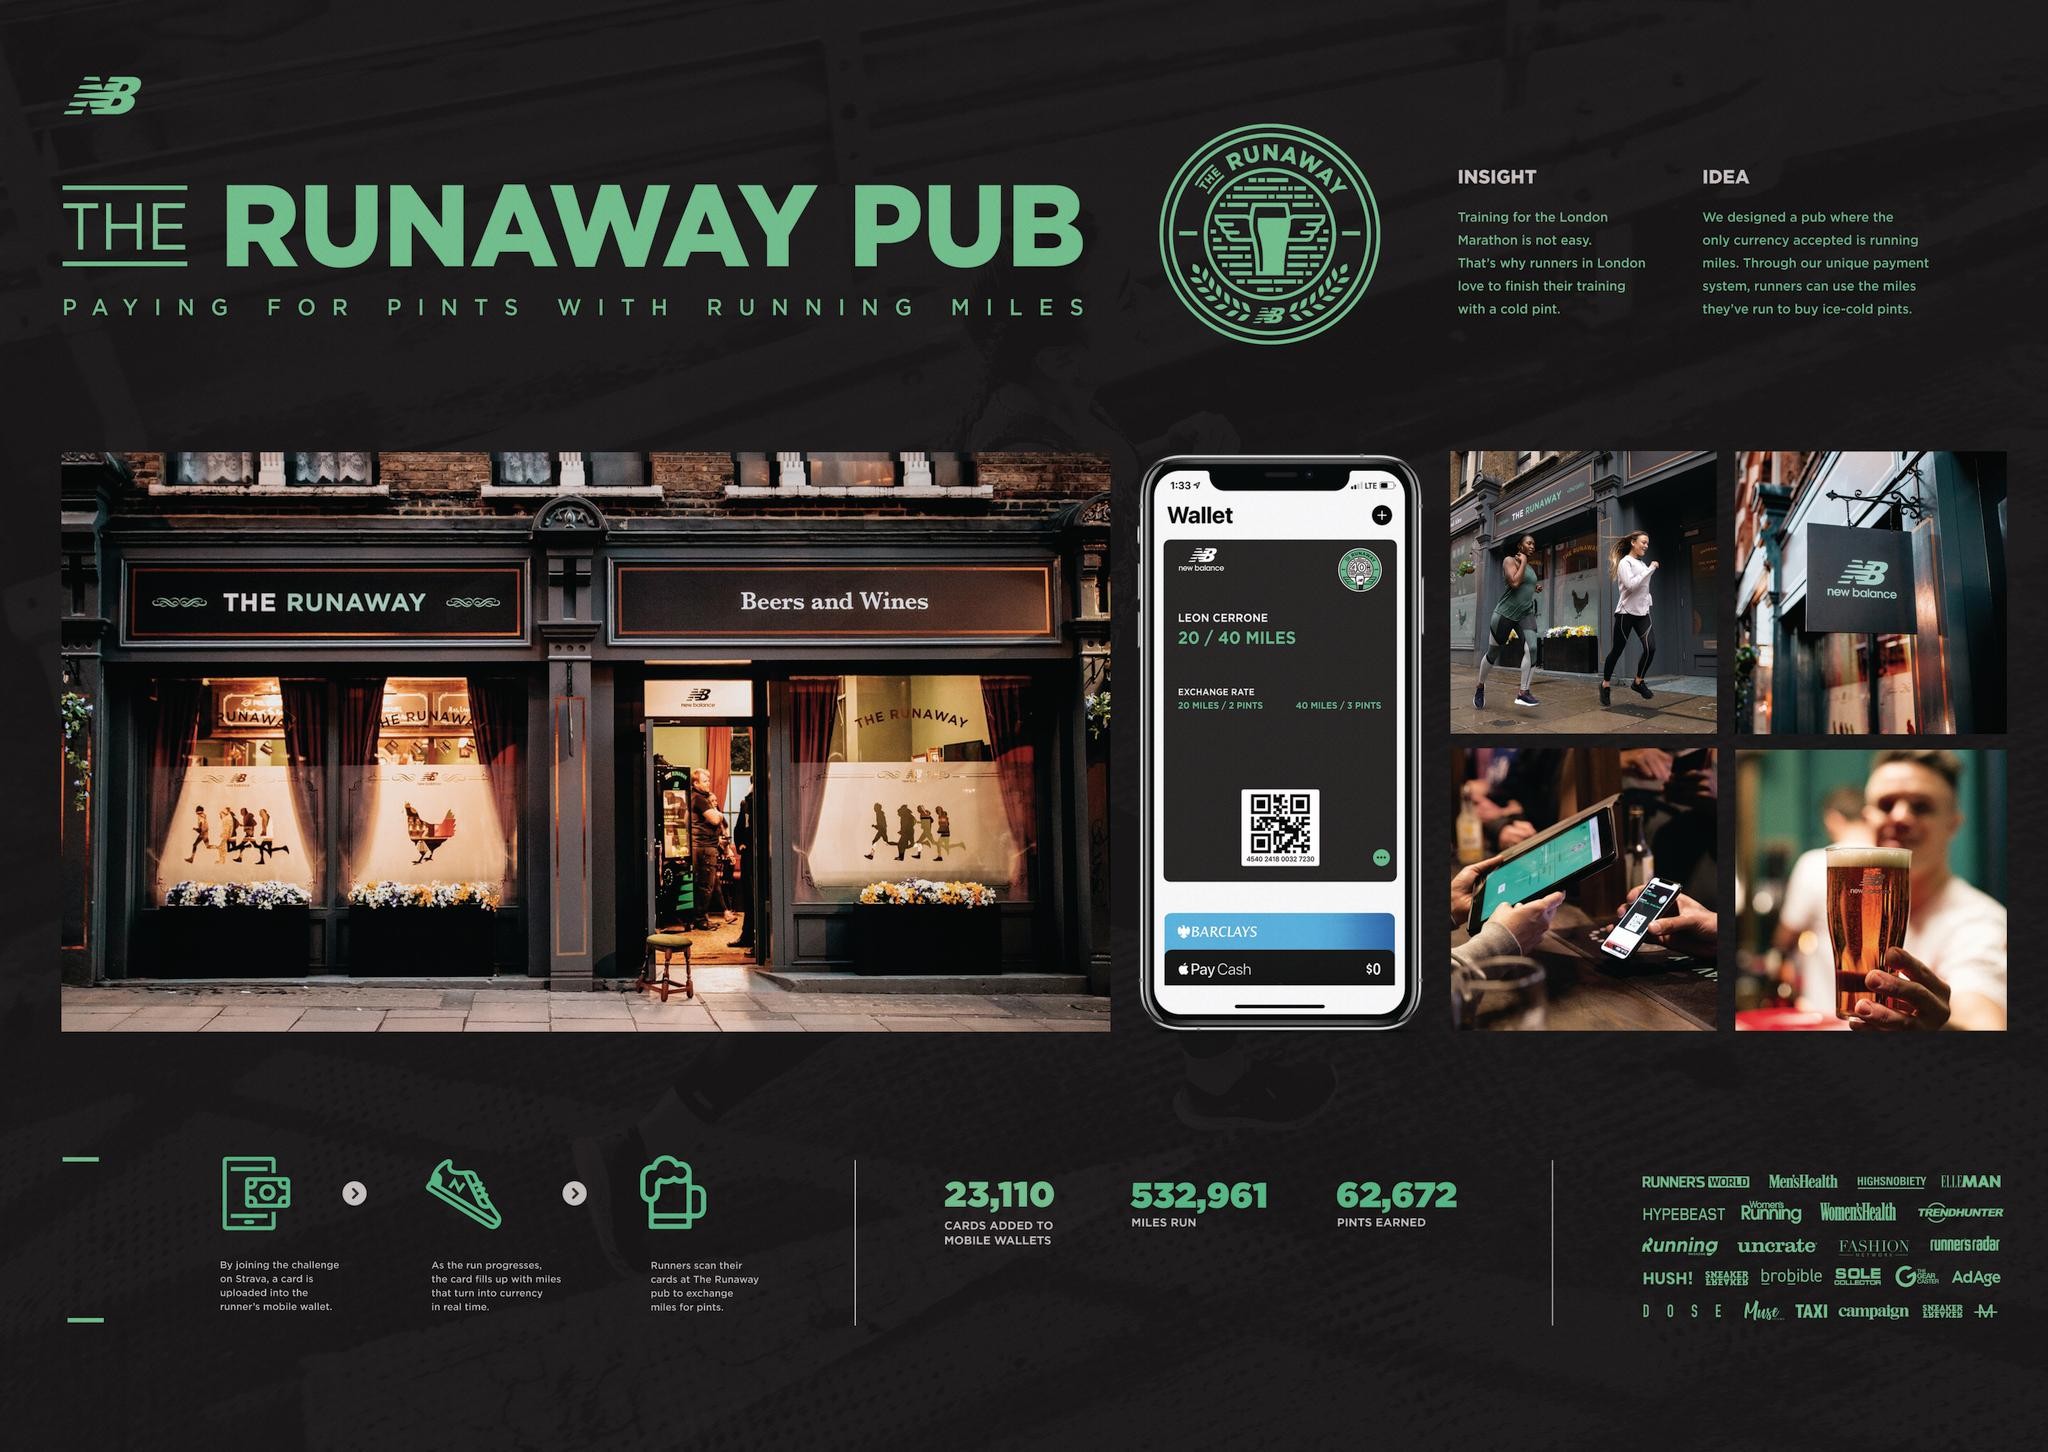 The Runaway Pub